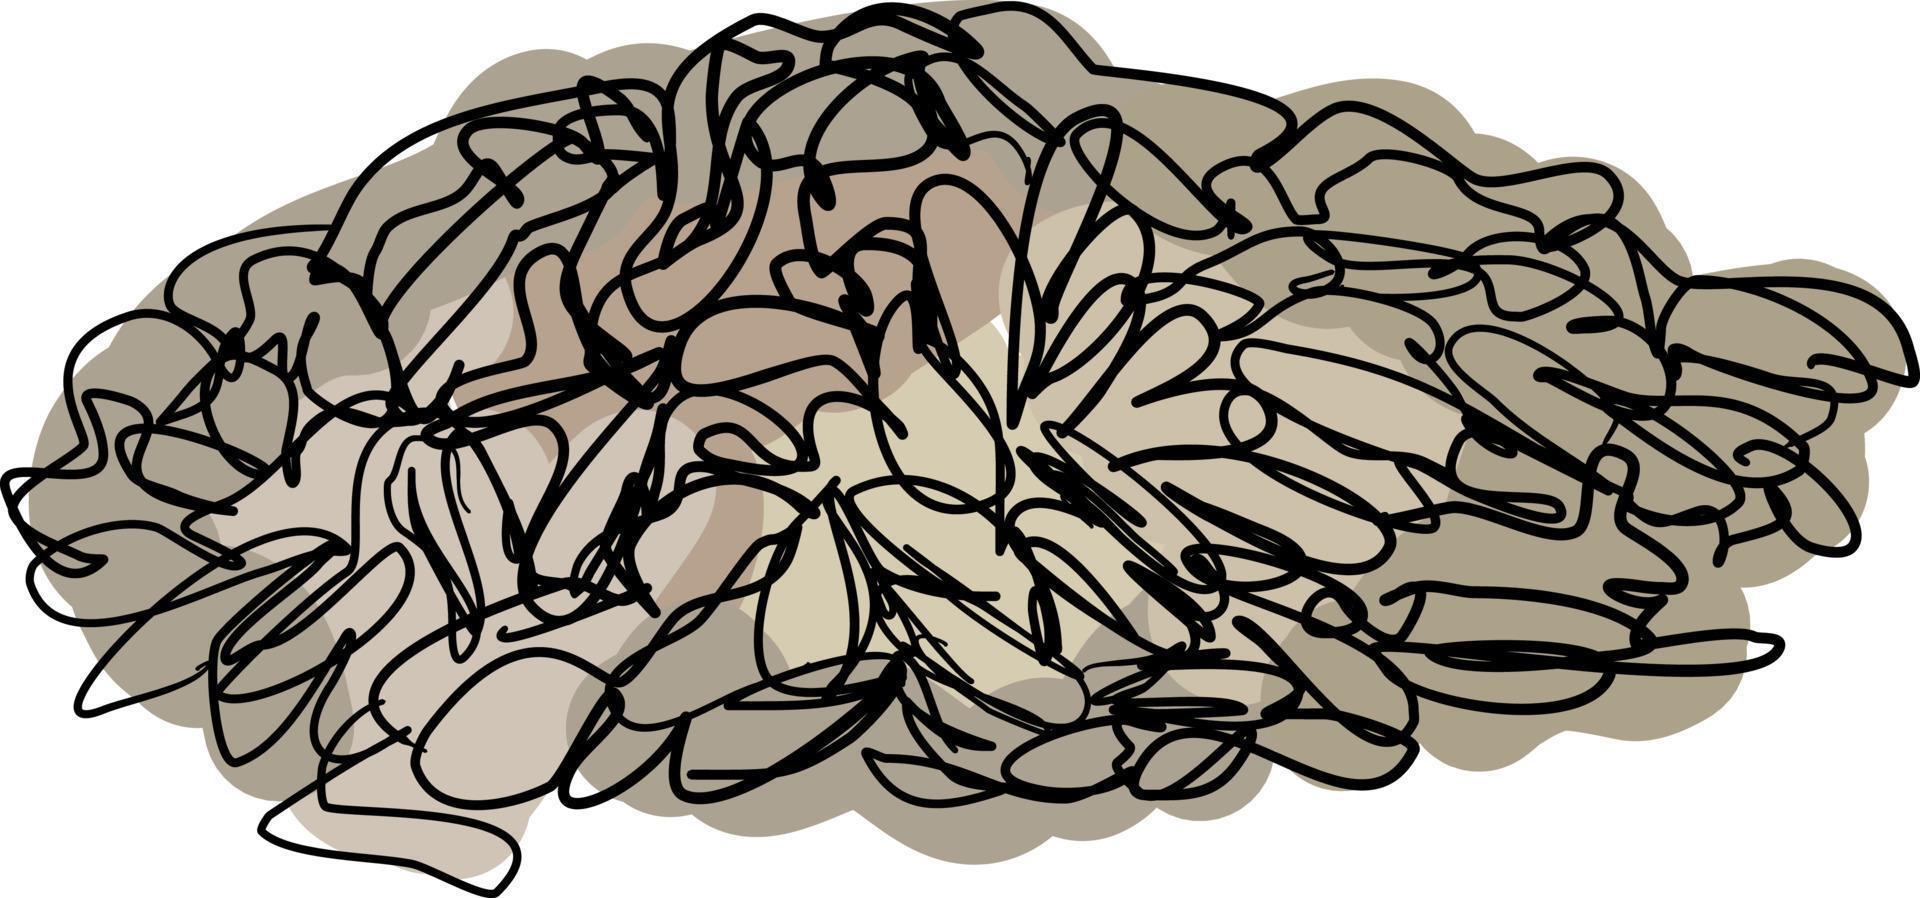 sementes de girassol, ilustração, vetor em fundo branco.